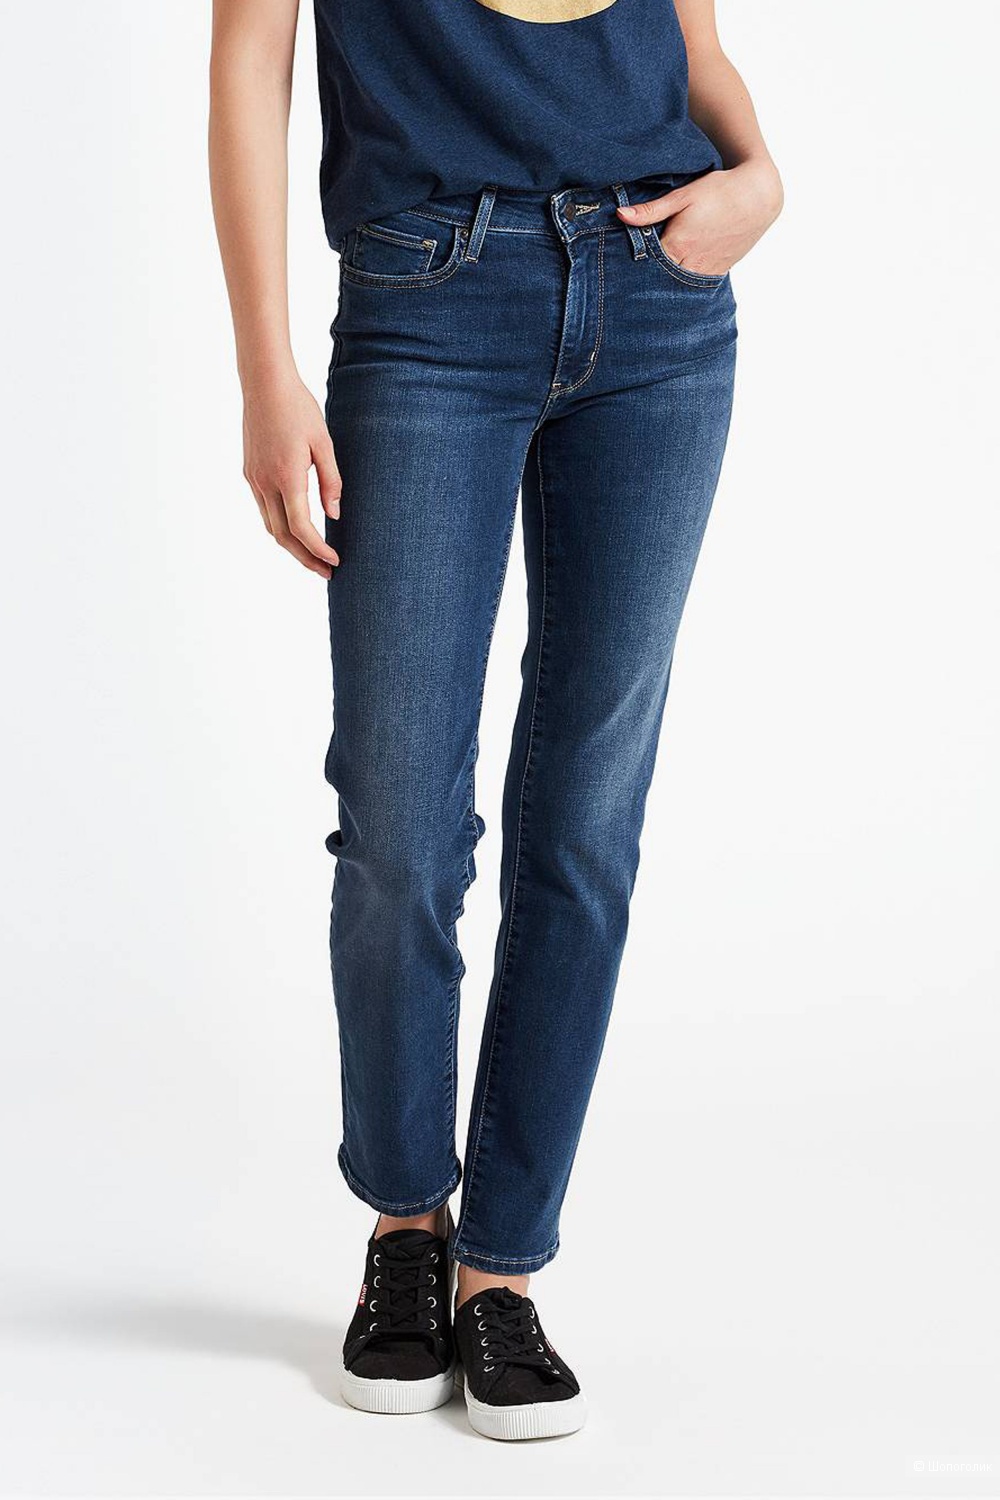 Новые джинсы Levis 712 Slim 25 размер